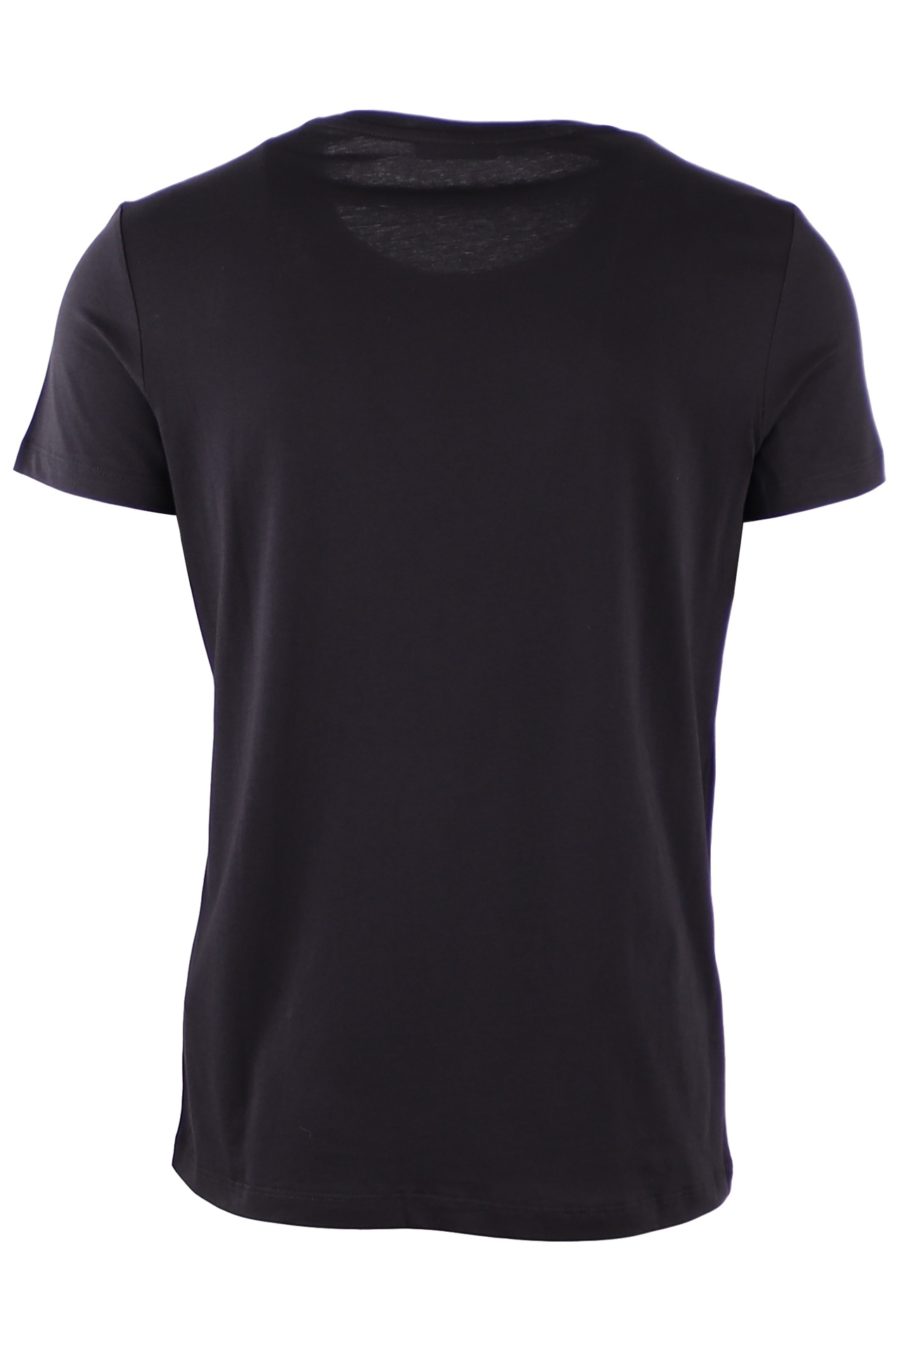 Camiseta Balmain negra con logotipo en relieve - eca03c65fd24e48e6d6a04cb94b3b34bba6c2b54